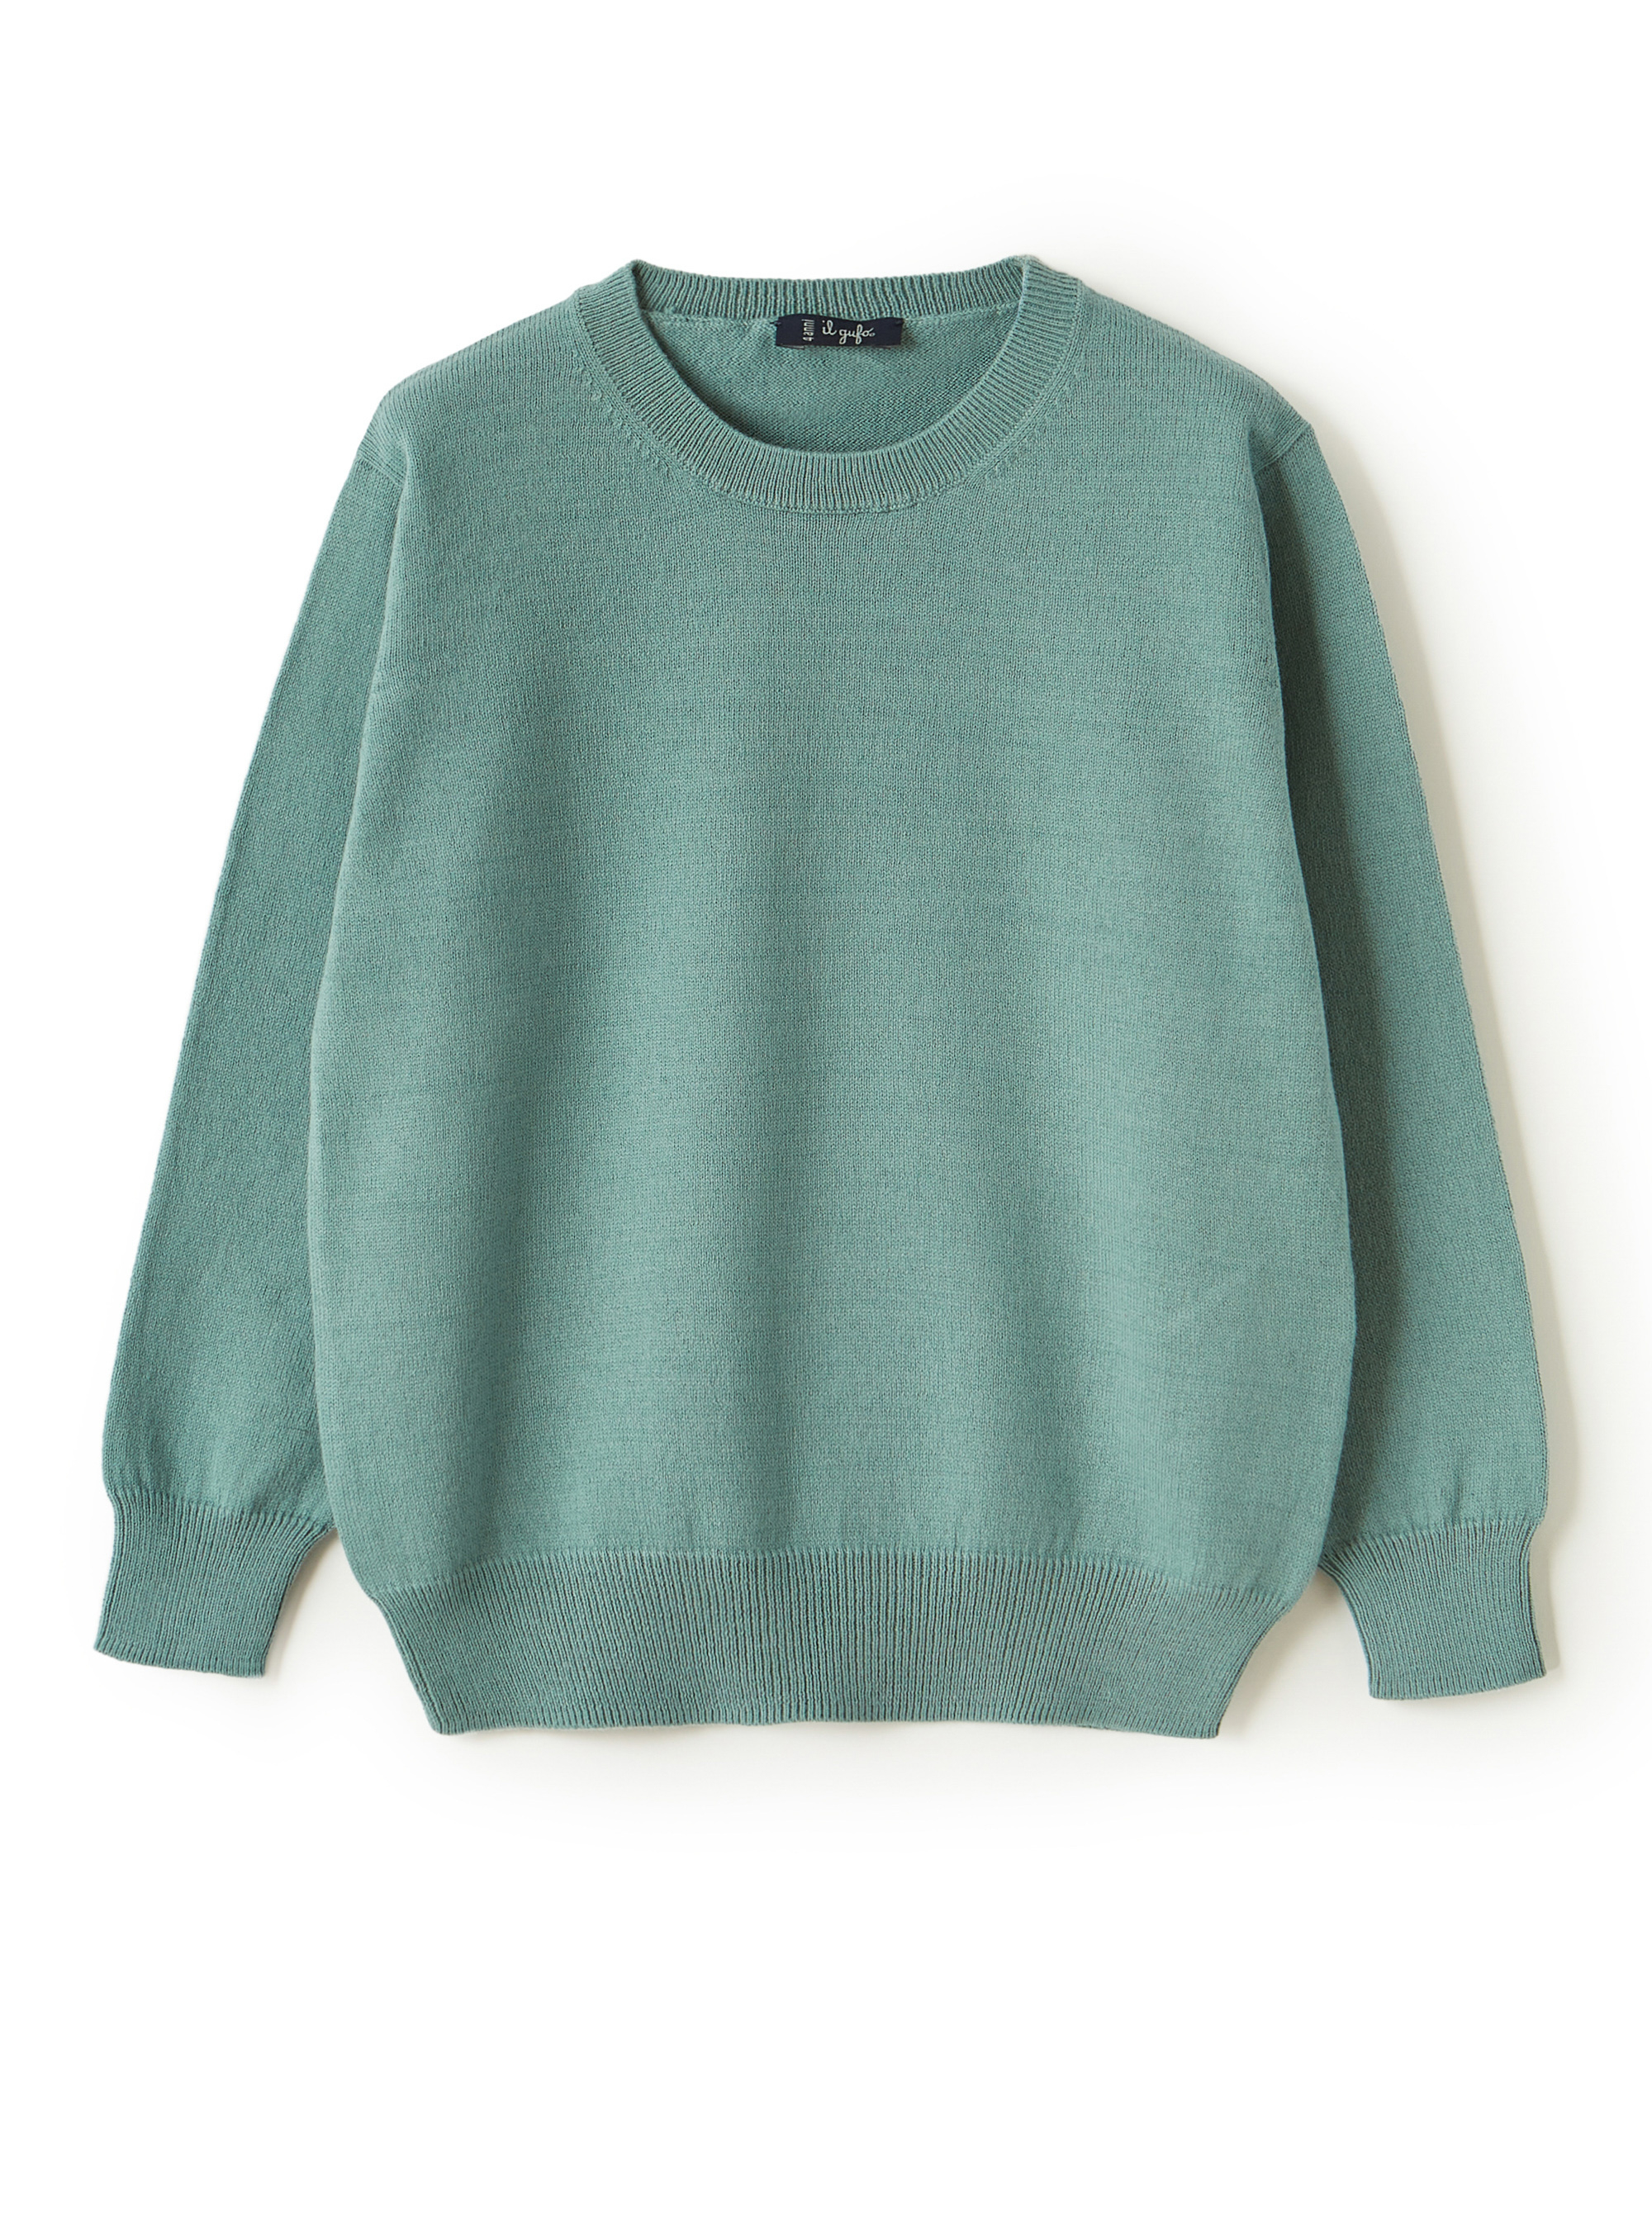 Grüner Pullover aus Bio-Baumwolle - Pullover - Il Gufo